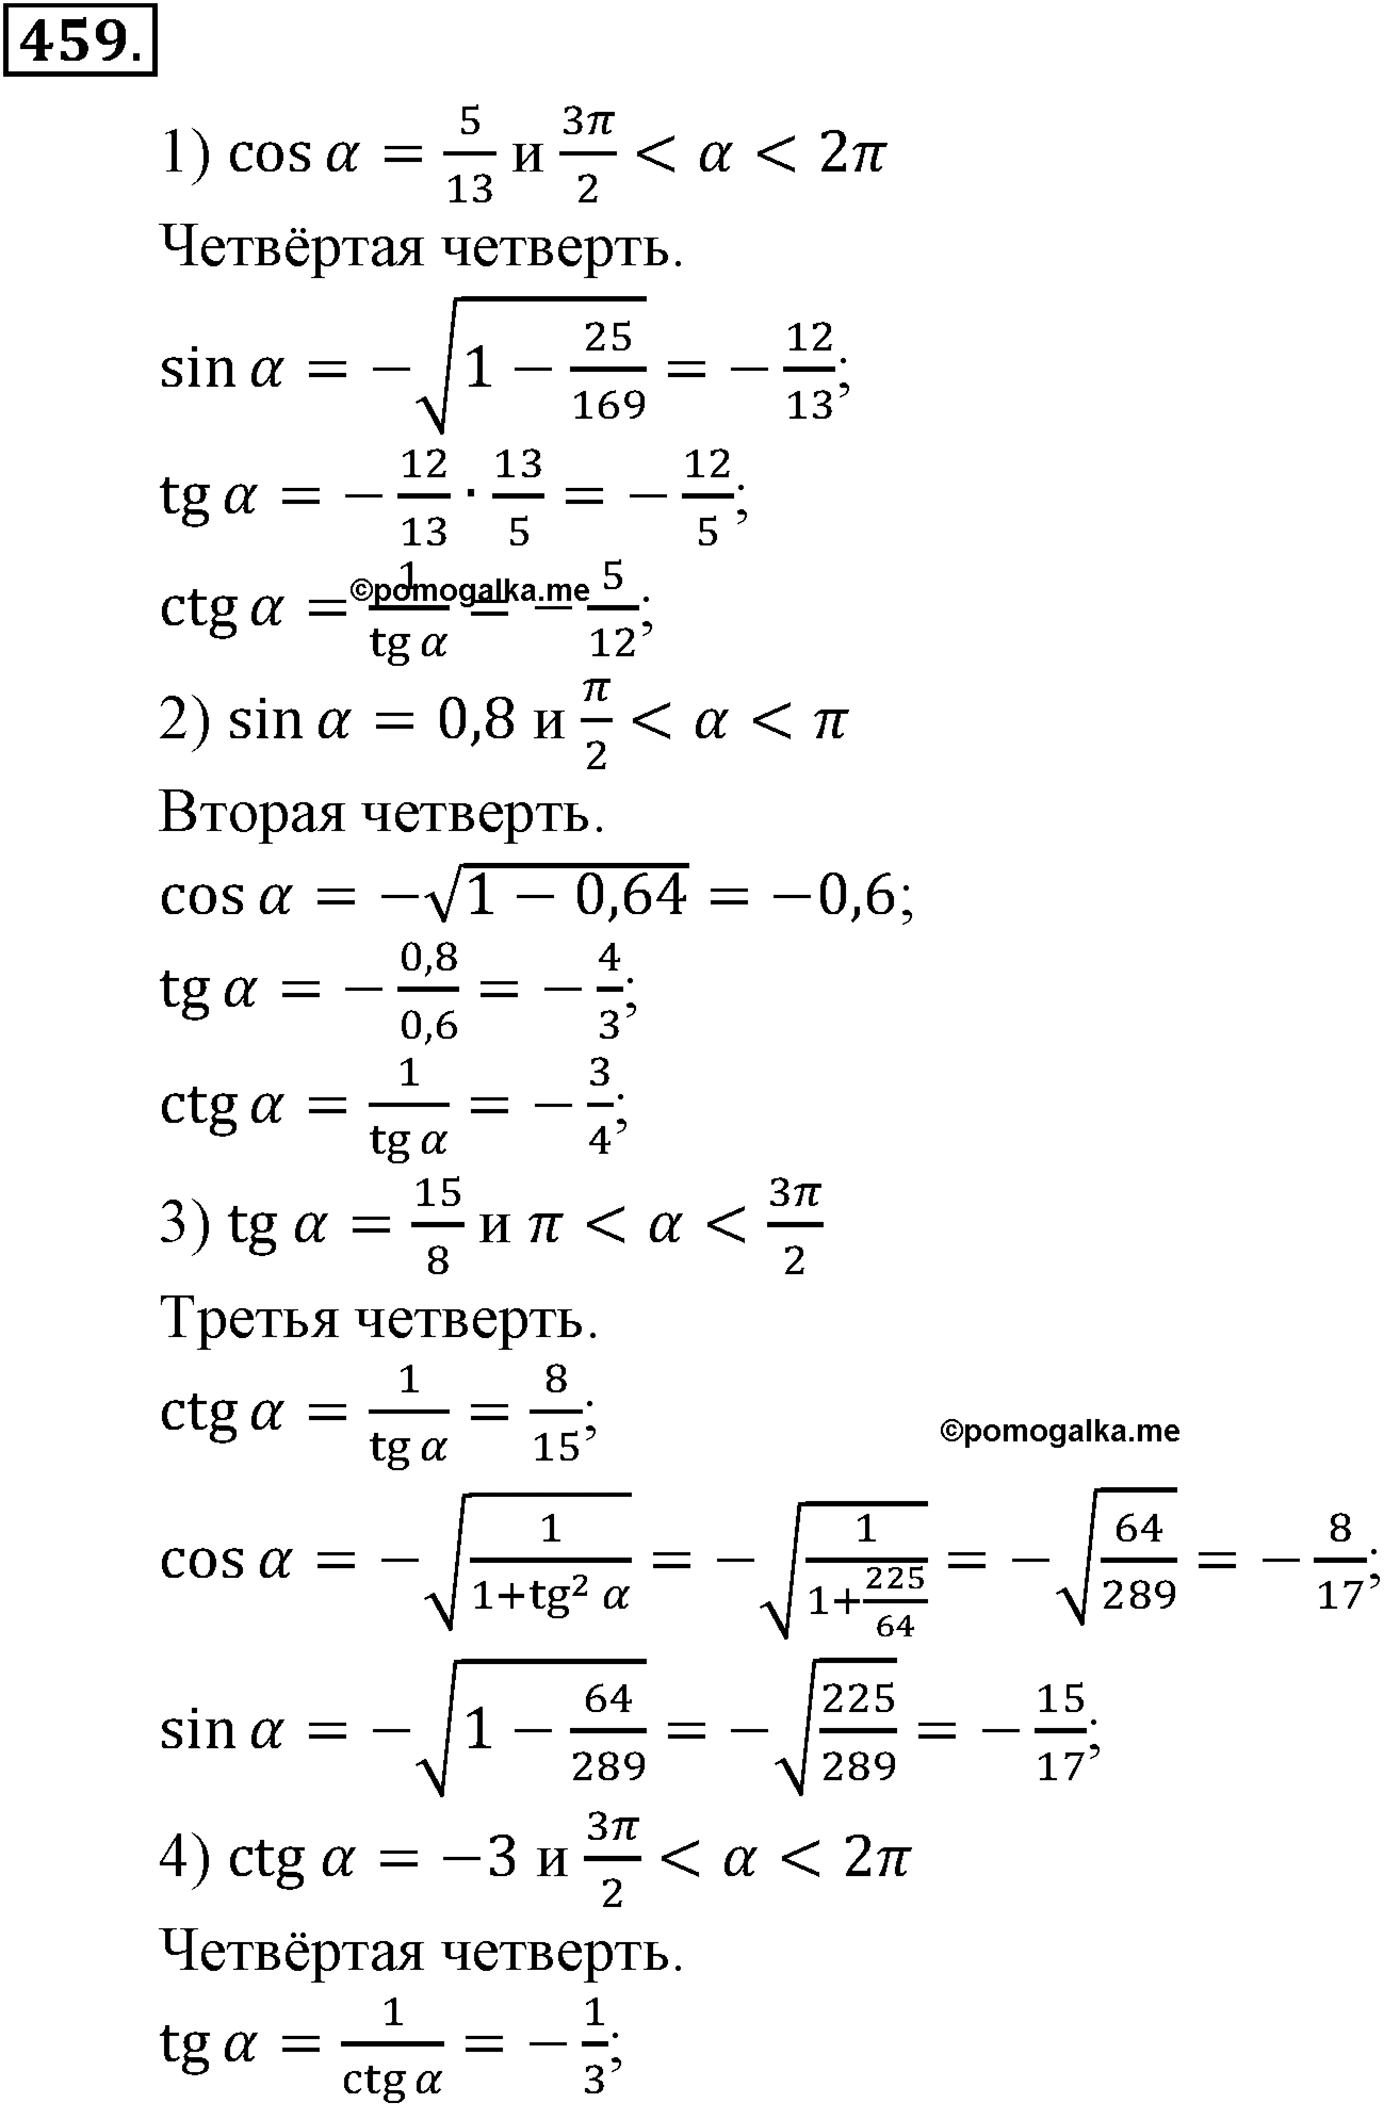 разбор задачи №459 по алгебре за 10-11 класс из учебника Алимова, Колягина